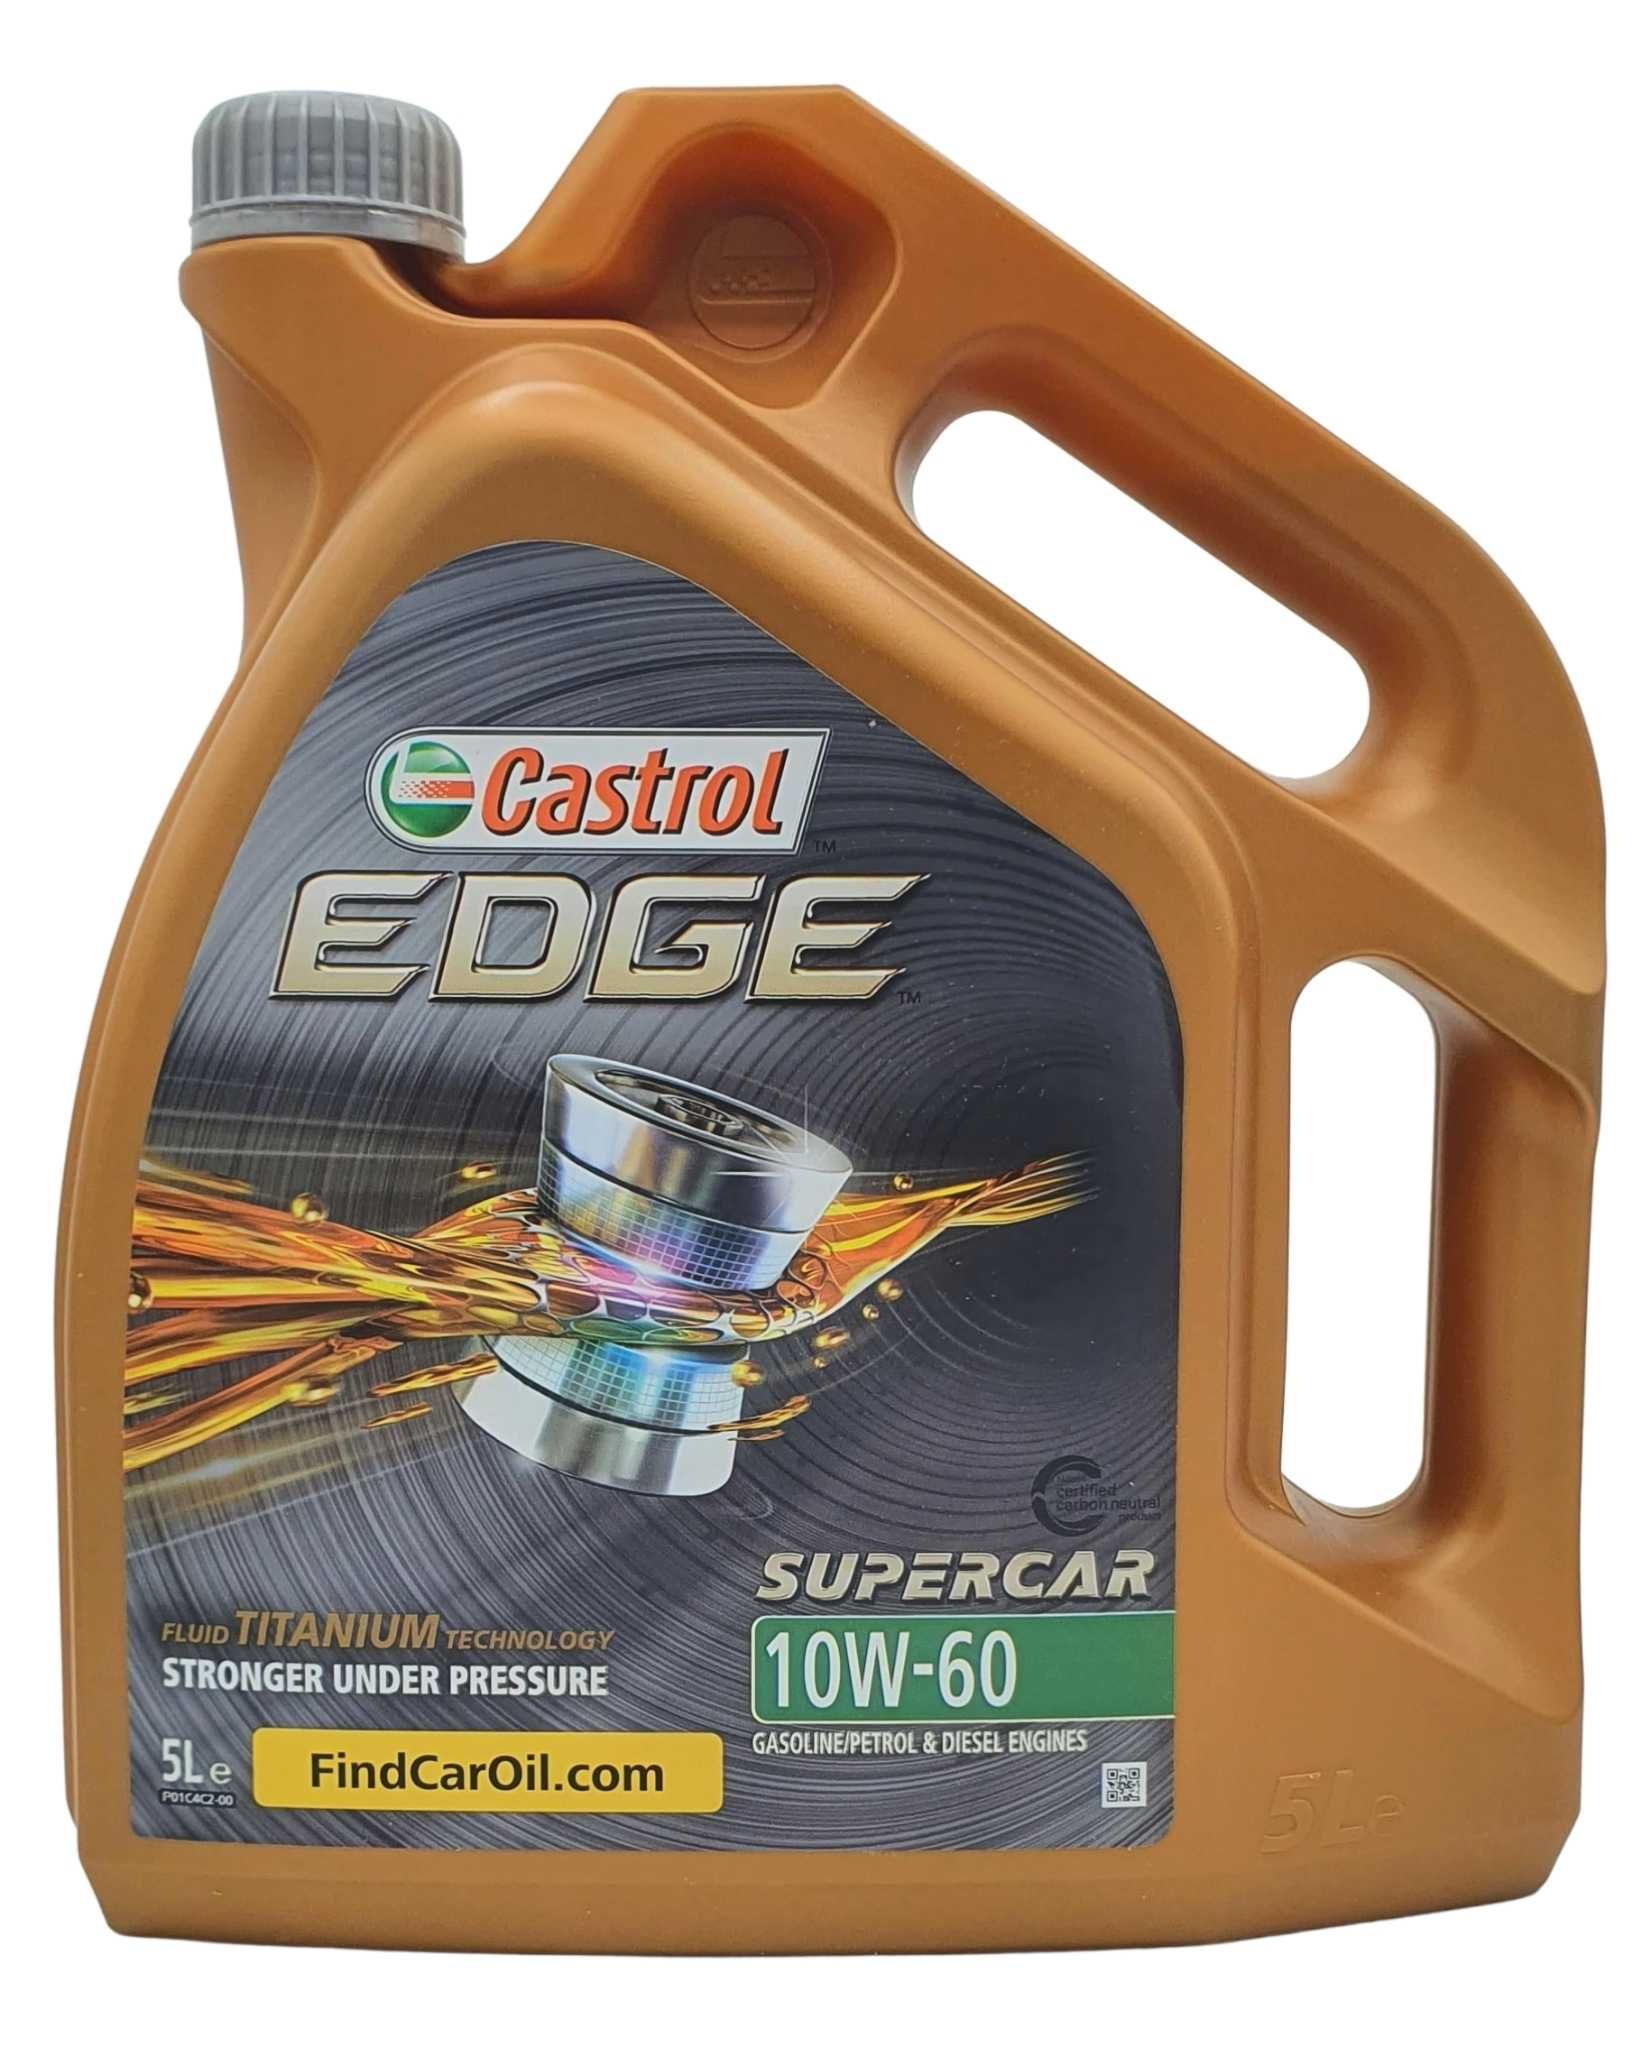 Castrol Edge Fluid Titanium Supercar 10W-60 5 Liter